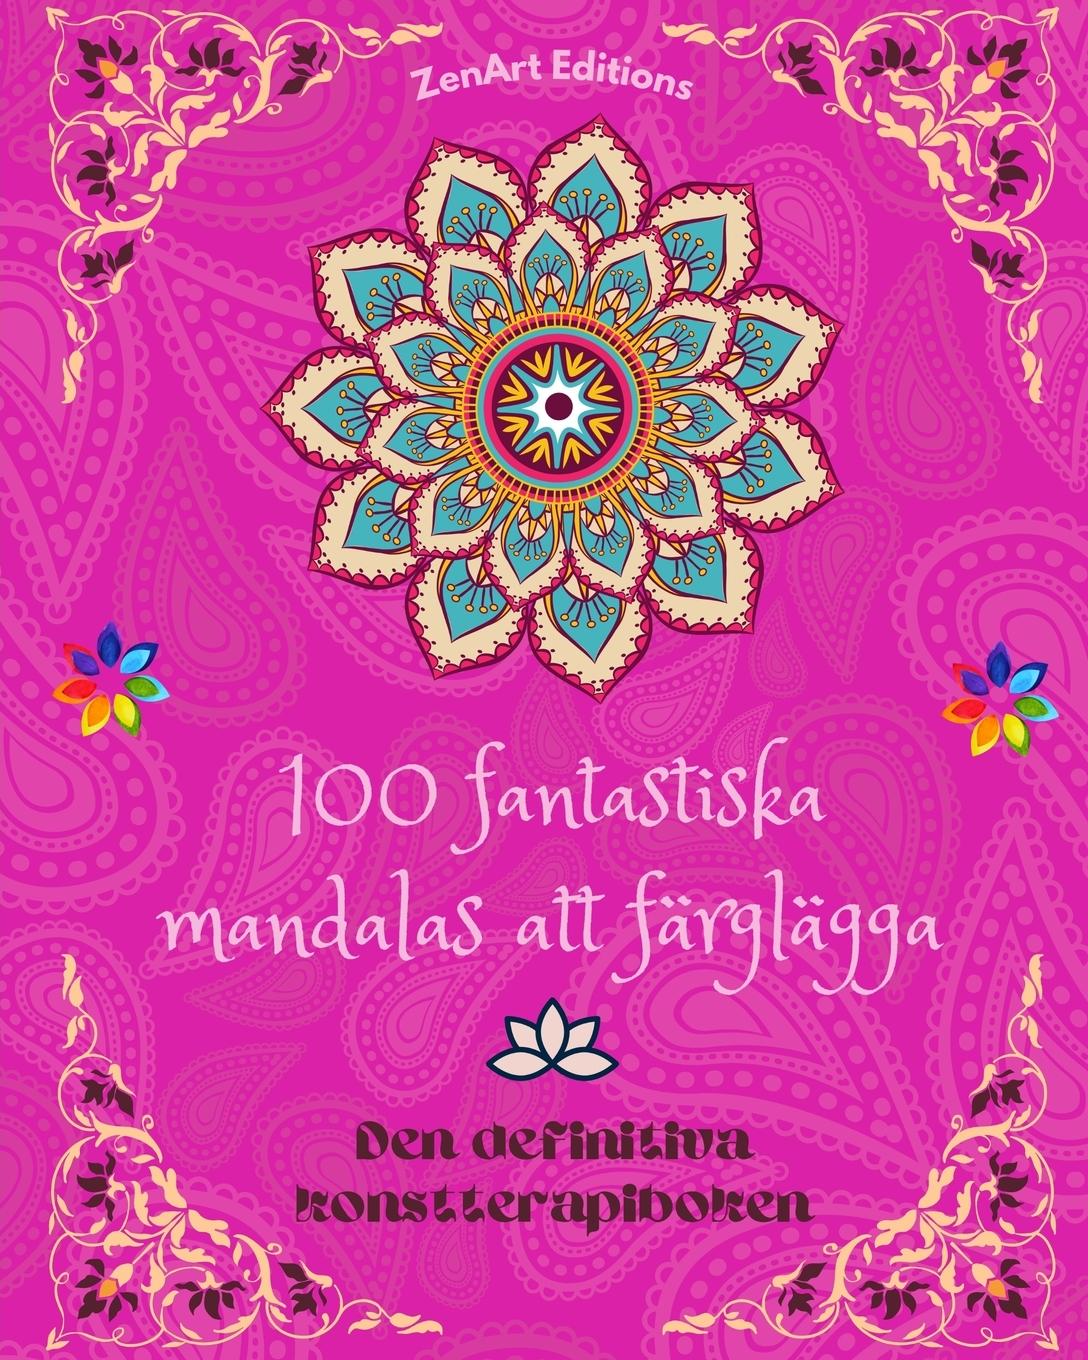 Book 100 fantastiska mandalas att färglägga 